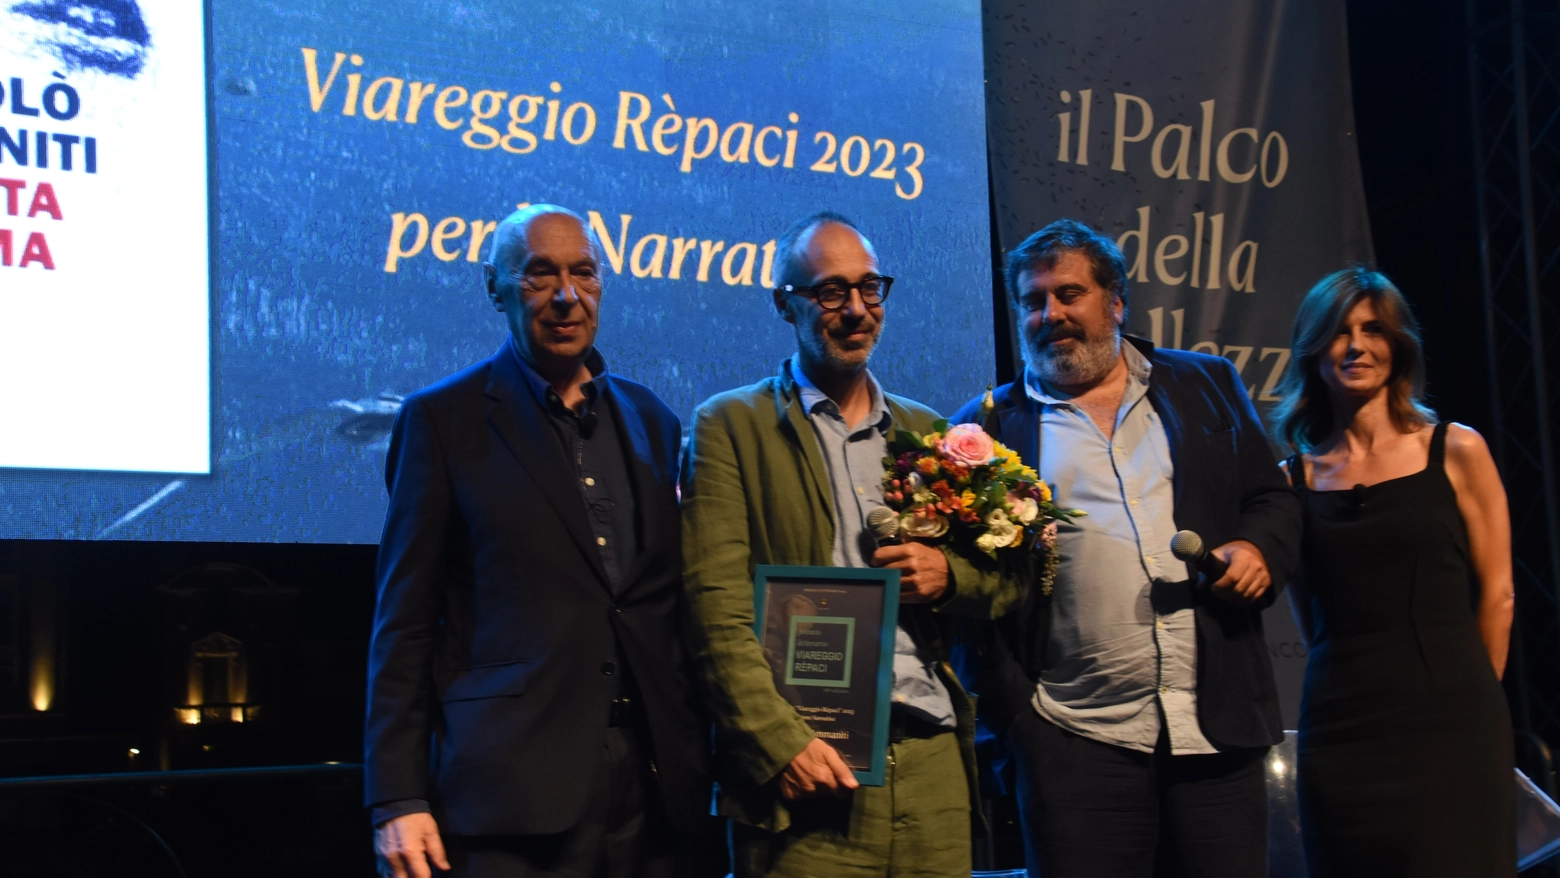 Paolo Mieli, presidente di giuria: "Sono veramente colpito dalla straordinaria partecipazione a questa edizione”